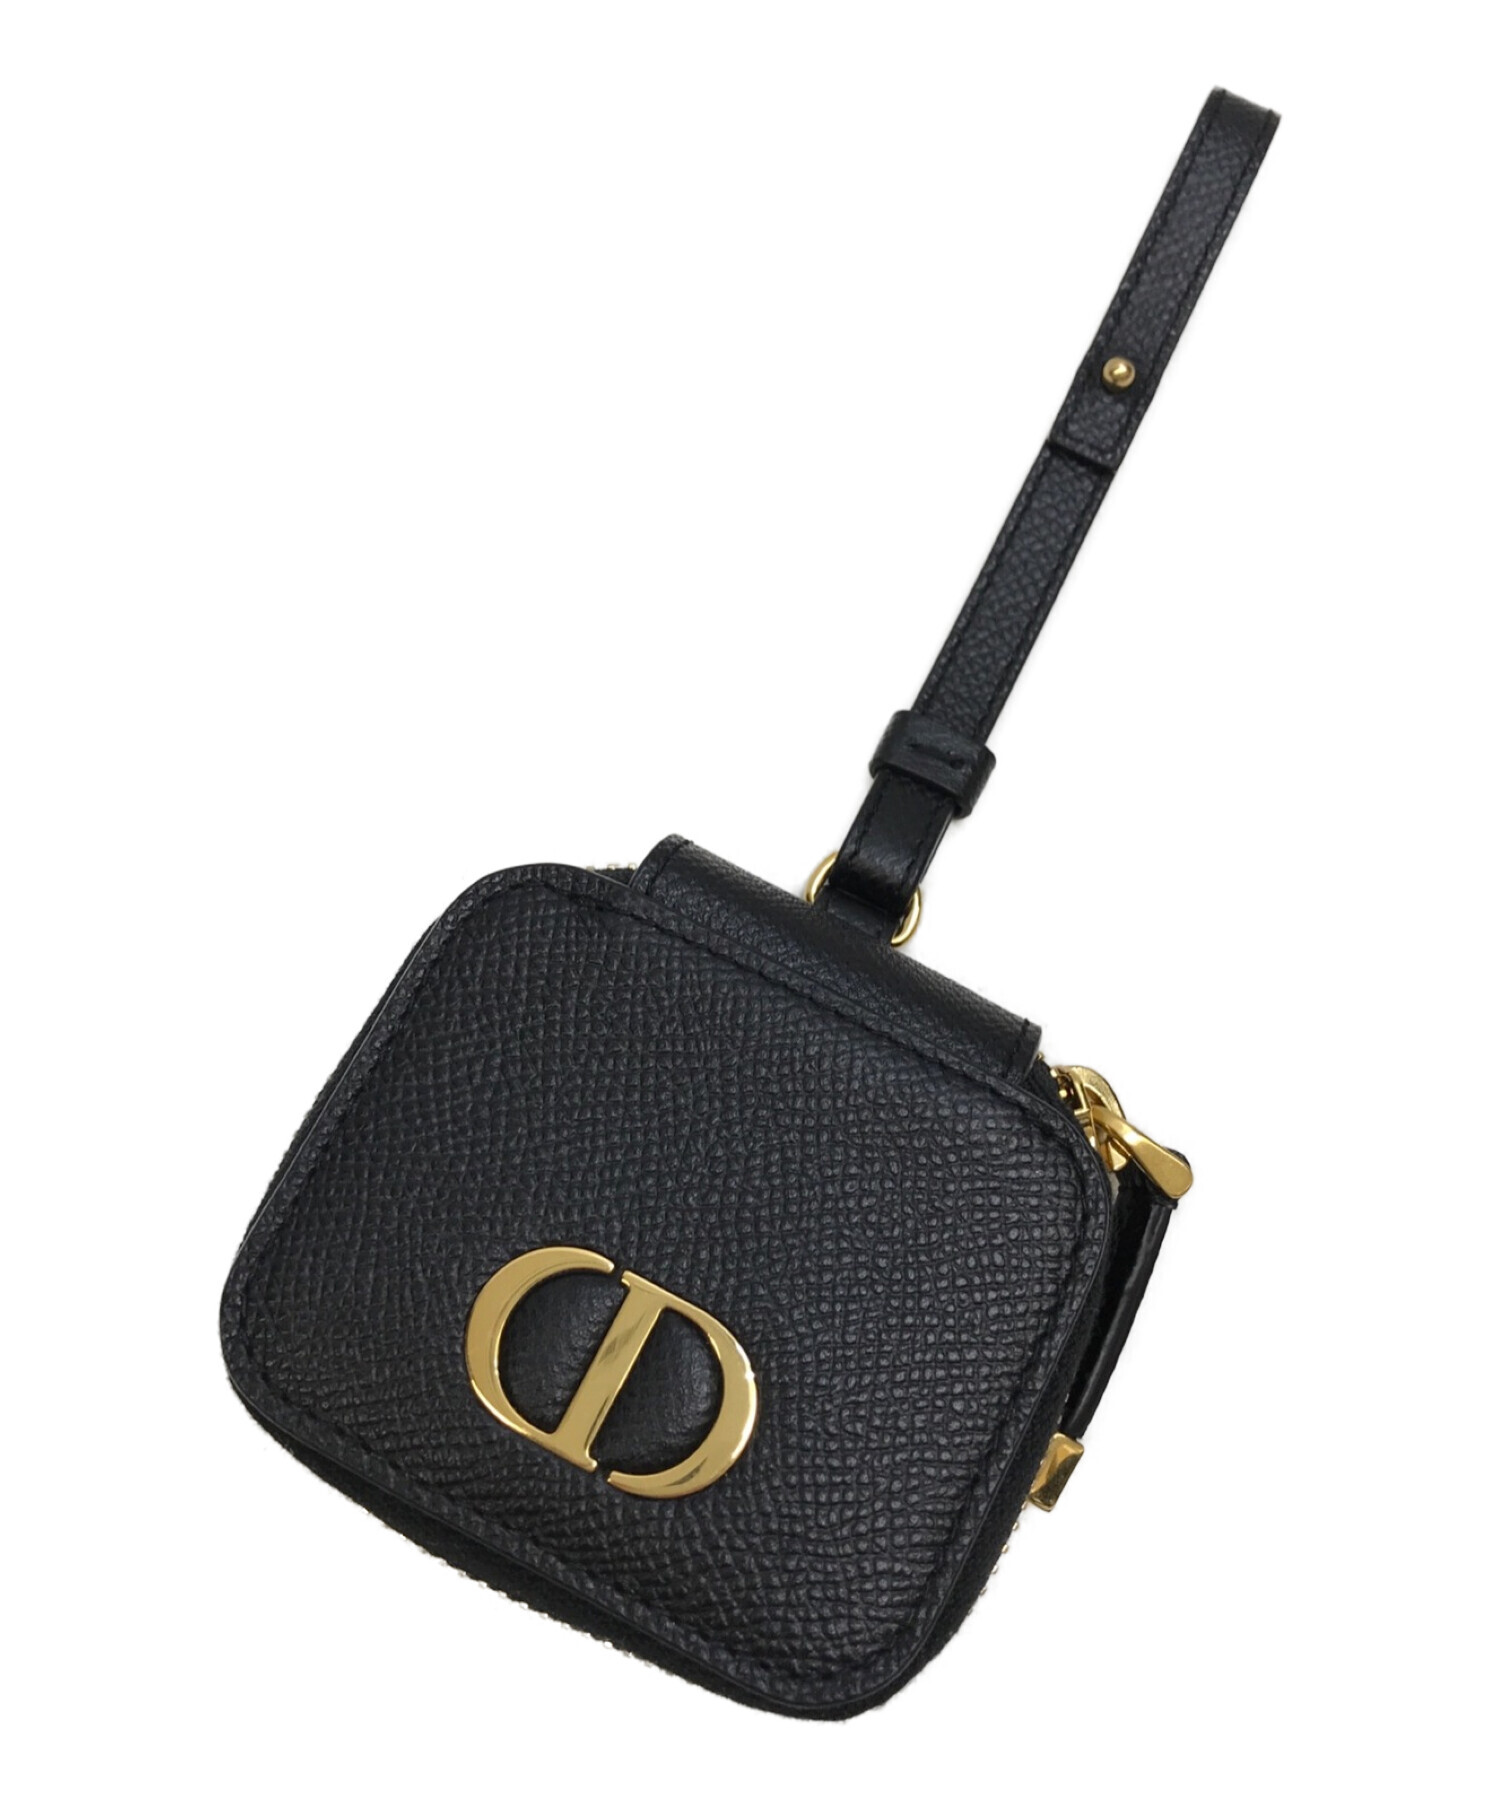 Christian Dior (クリスチャン ディオール) CDロゴ AirPods proケース エアポッズプロケース ブラック